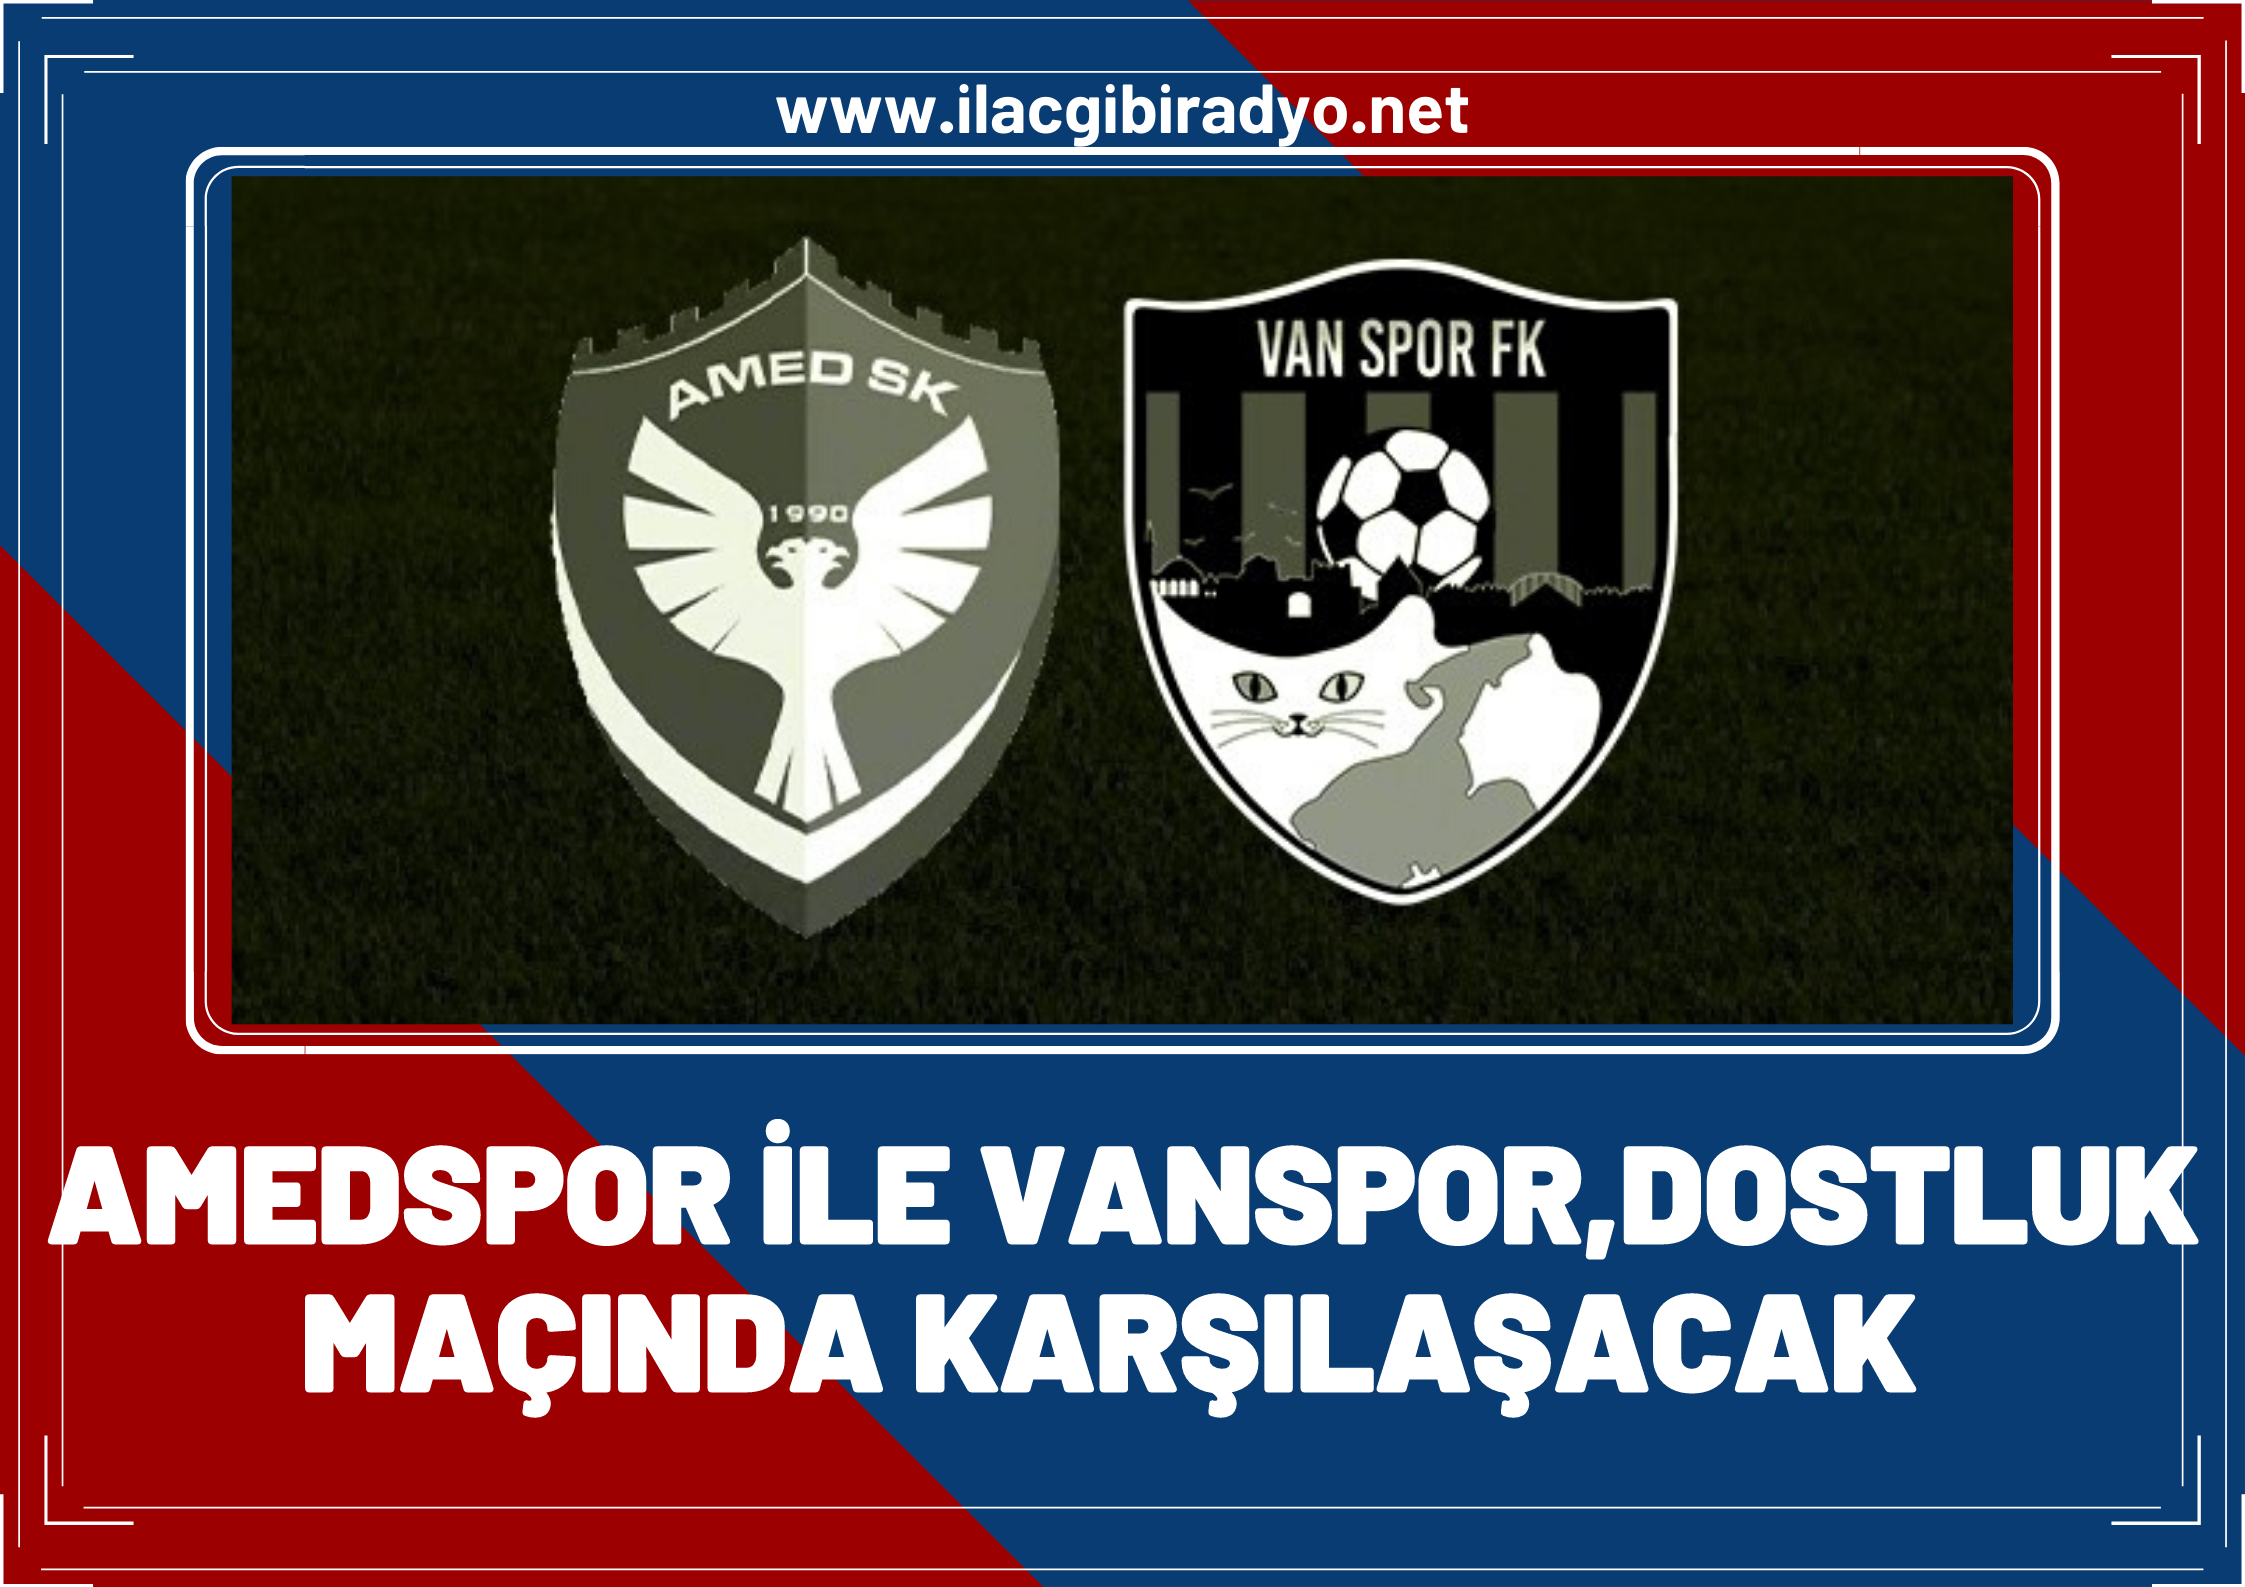 Amedspor ile Vanspor dostluk maçında karşılaşacak